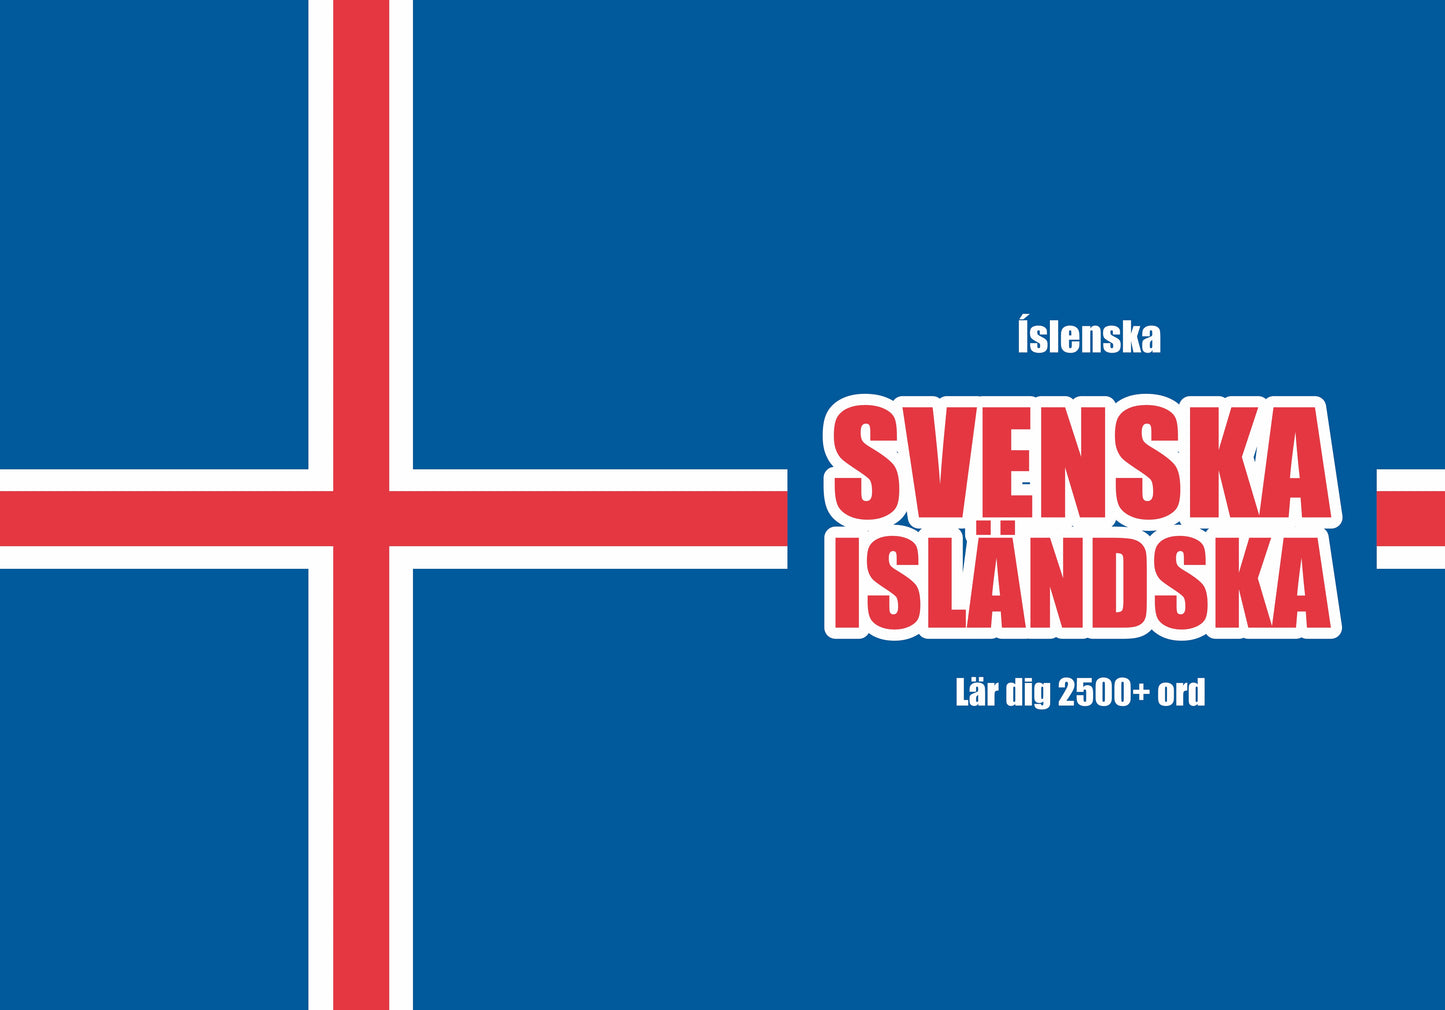 Svenska-islenska anteckningsbok att fylla i